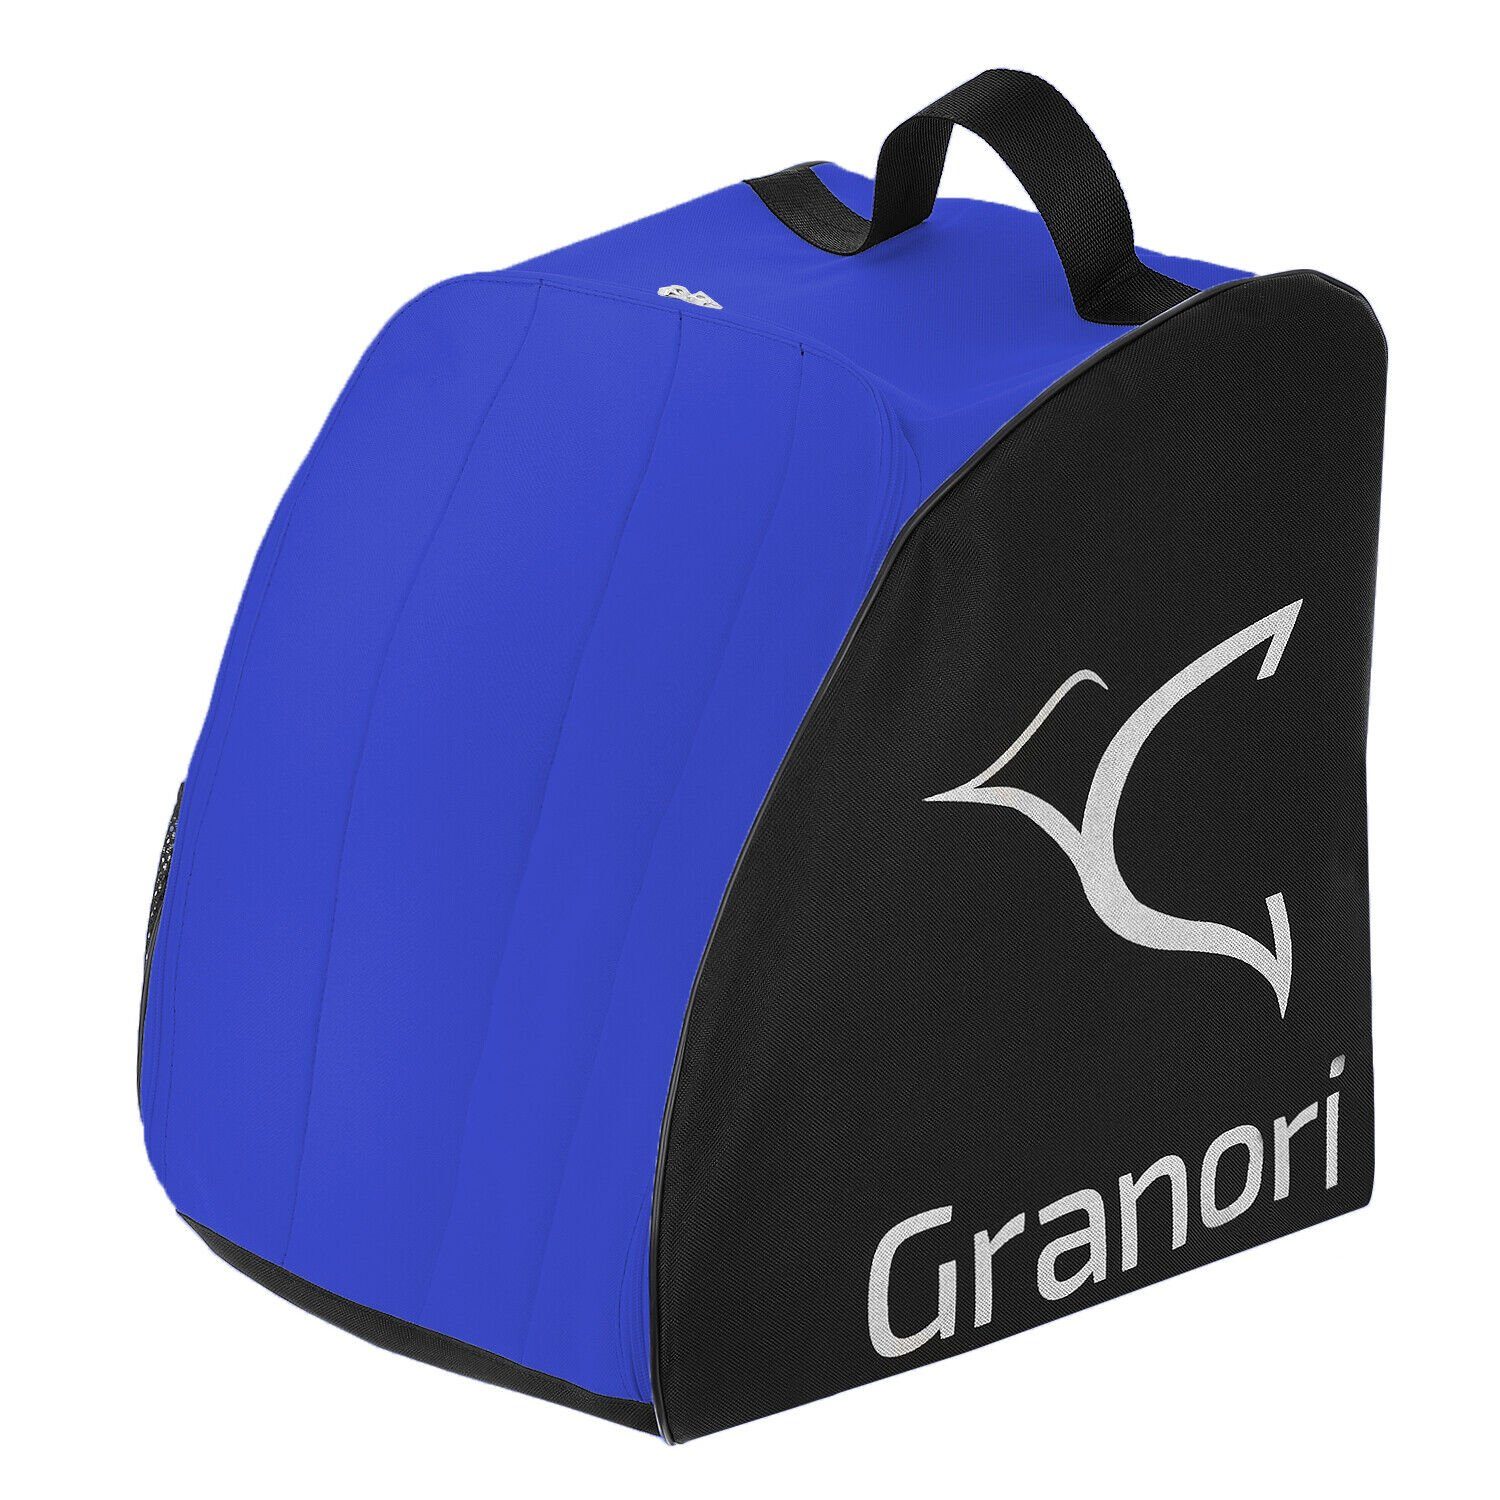 Granori Skirucksack Skischuhtasche für Skistiefel und Helm (gepolstert und abschließbar), mit Entwässerungsöffnung und Außenfach Blau-Schwarz